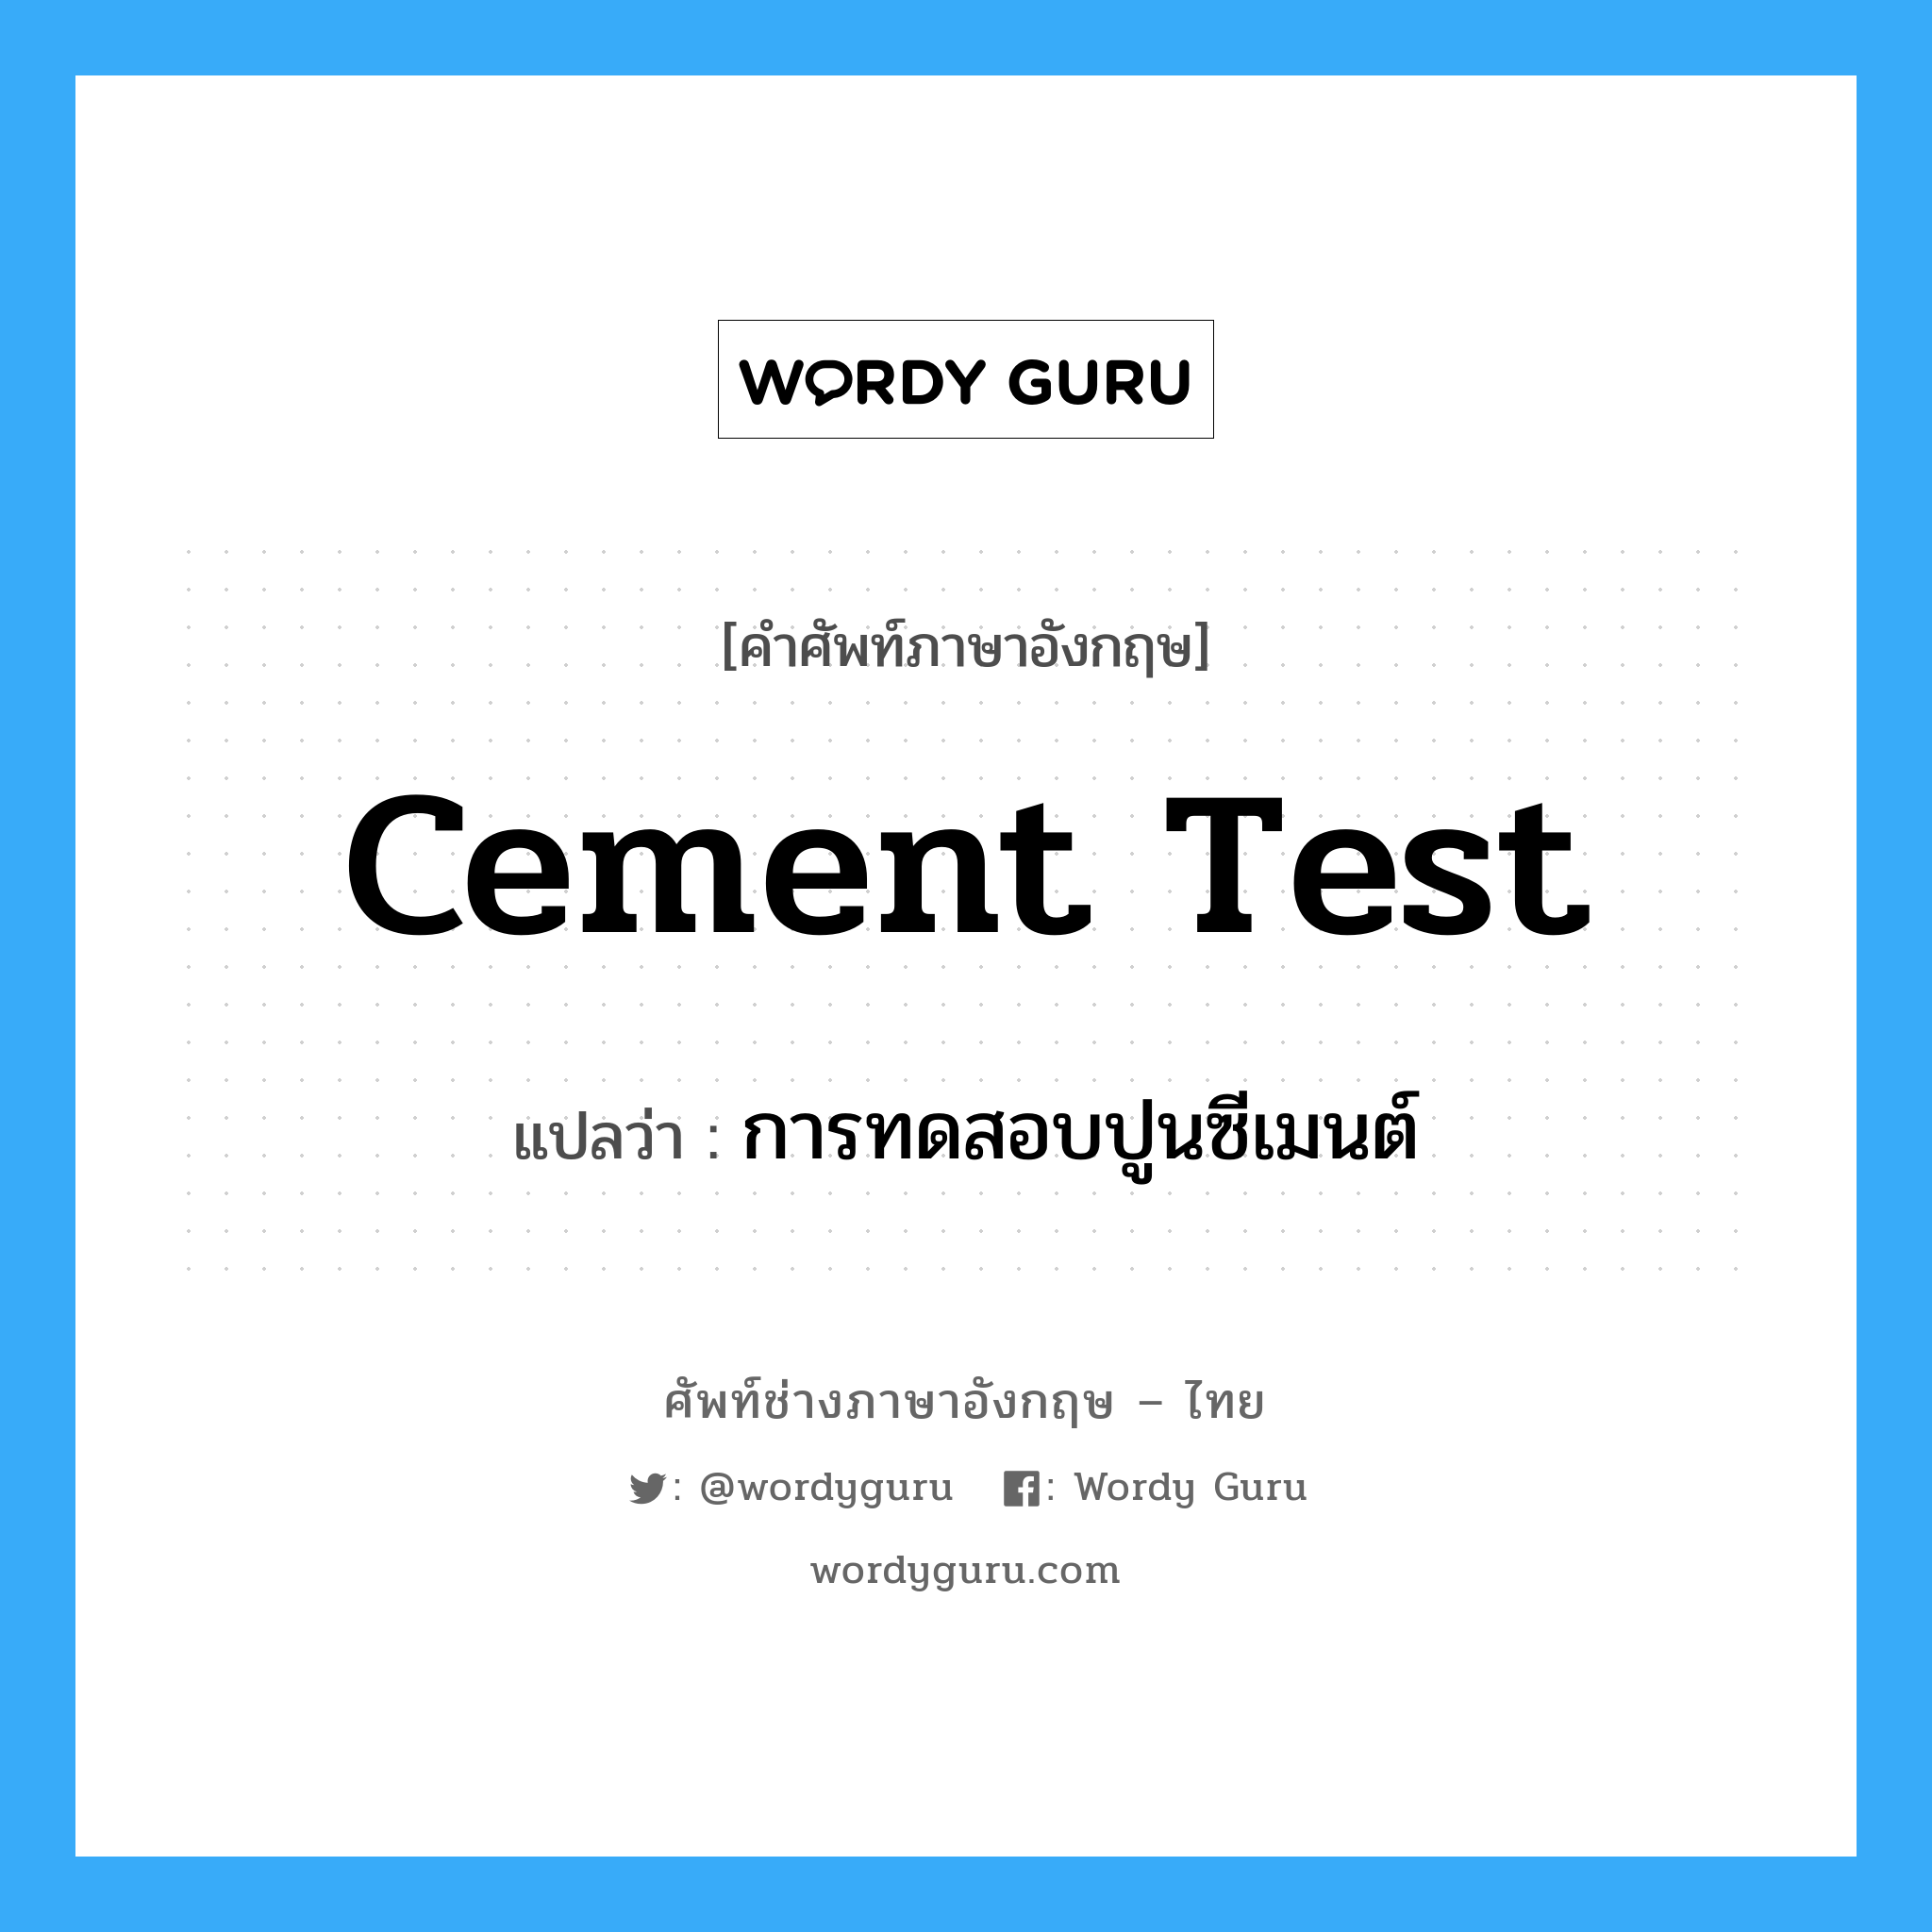 การทดสอบปูนซีเมนต์ ภาษาอังกฤษ?, คำศัพท์ช่างภาษาอังกฤษ - ไทย การทดสอบปูนซีเมนต์ คำศัพท์ภาษาอังกฤษ การทดสอบปูนซีเมนต์ แปลว่า cement test